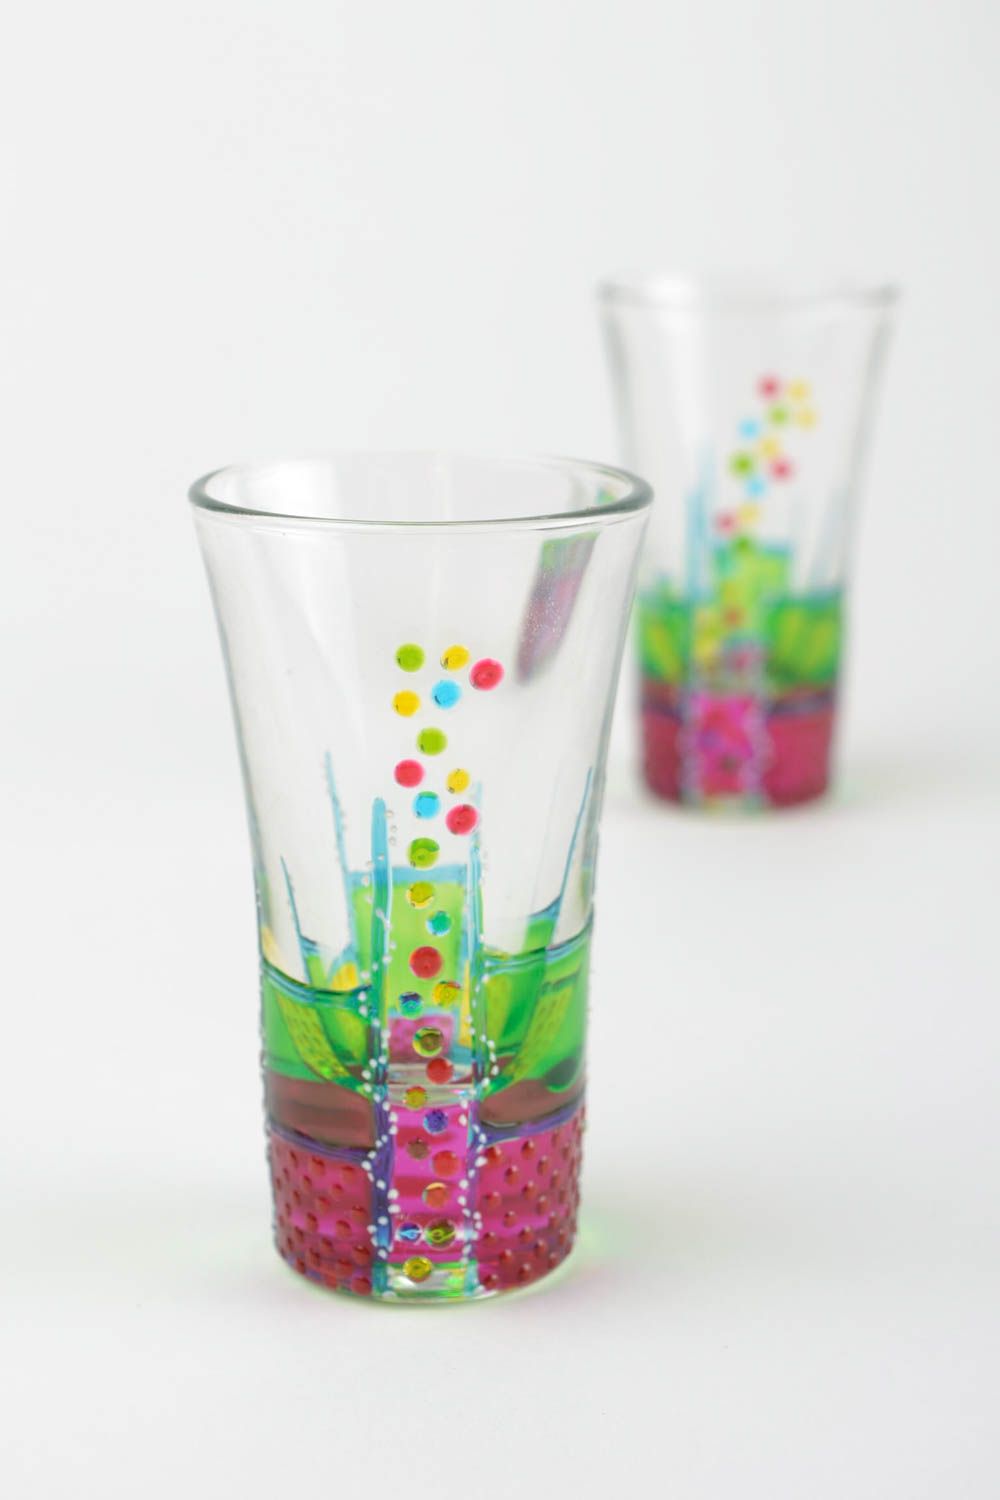 Handmade shot glasses designer glass tableware ideas for home decor photo 1